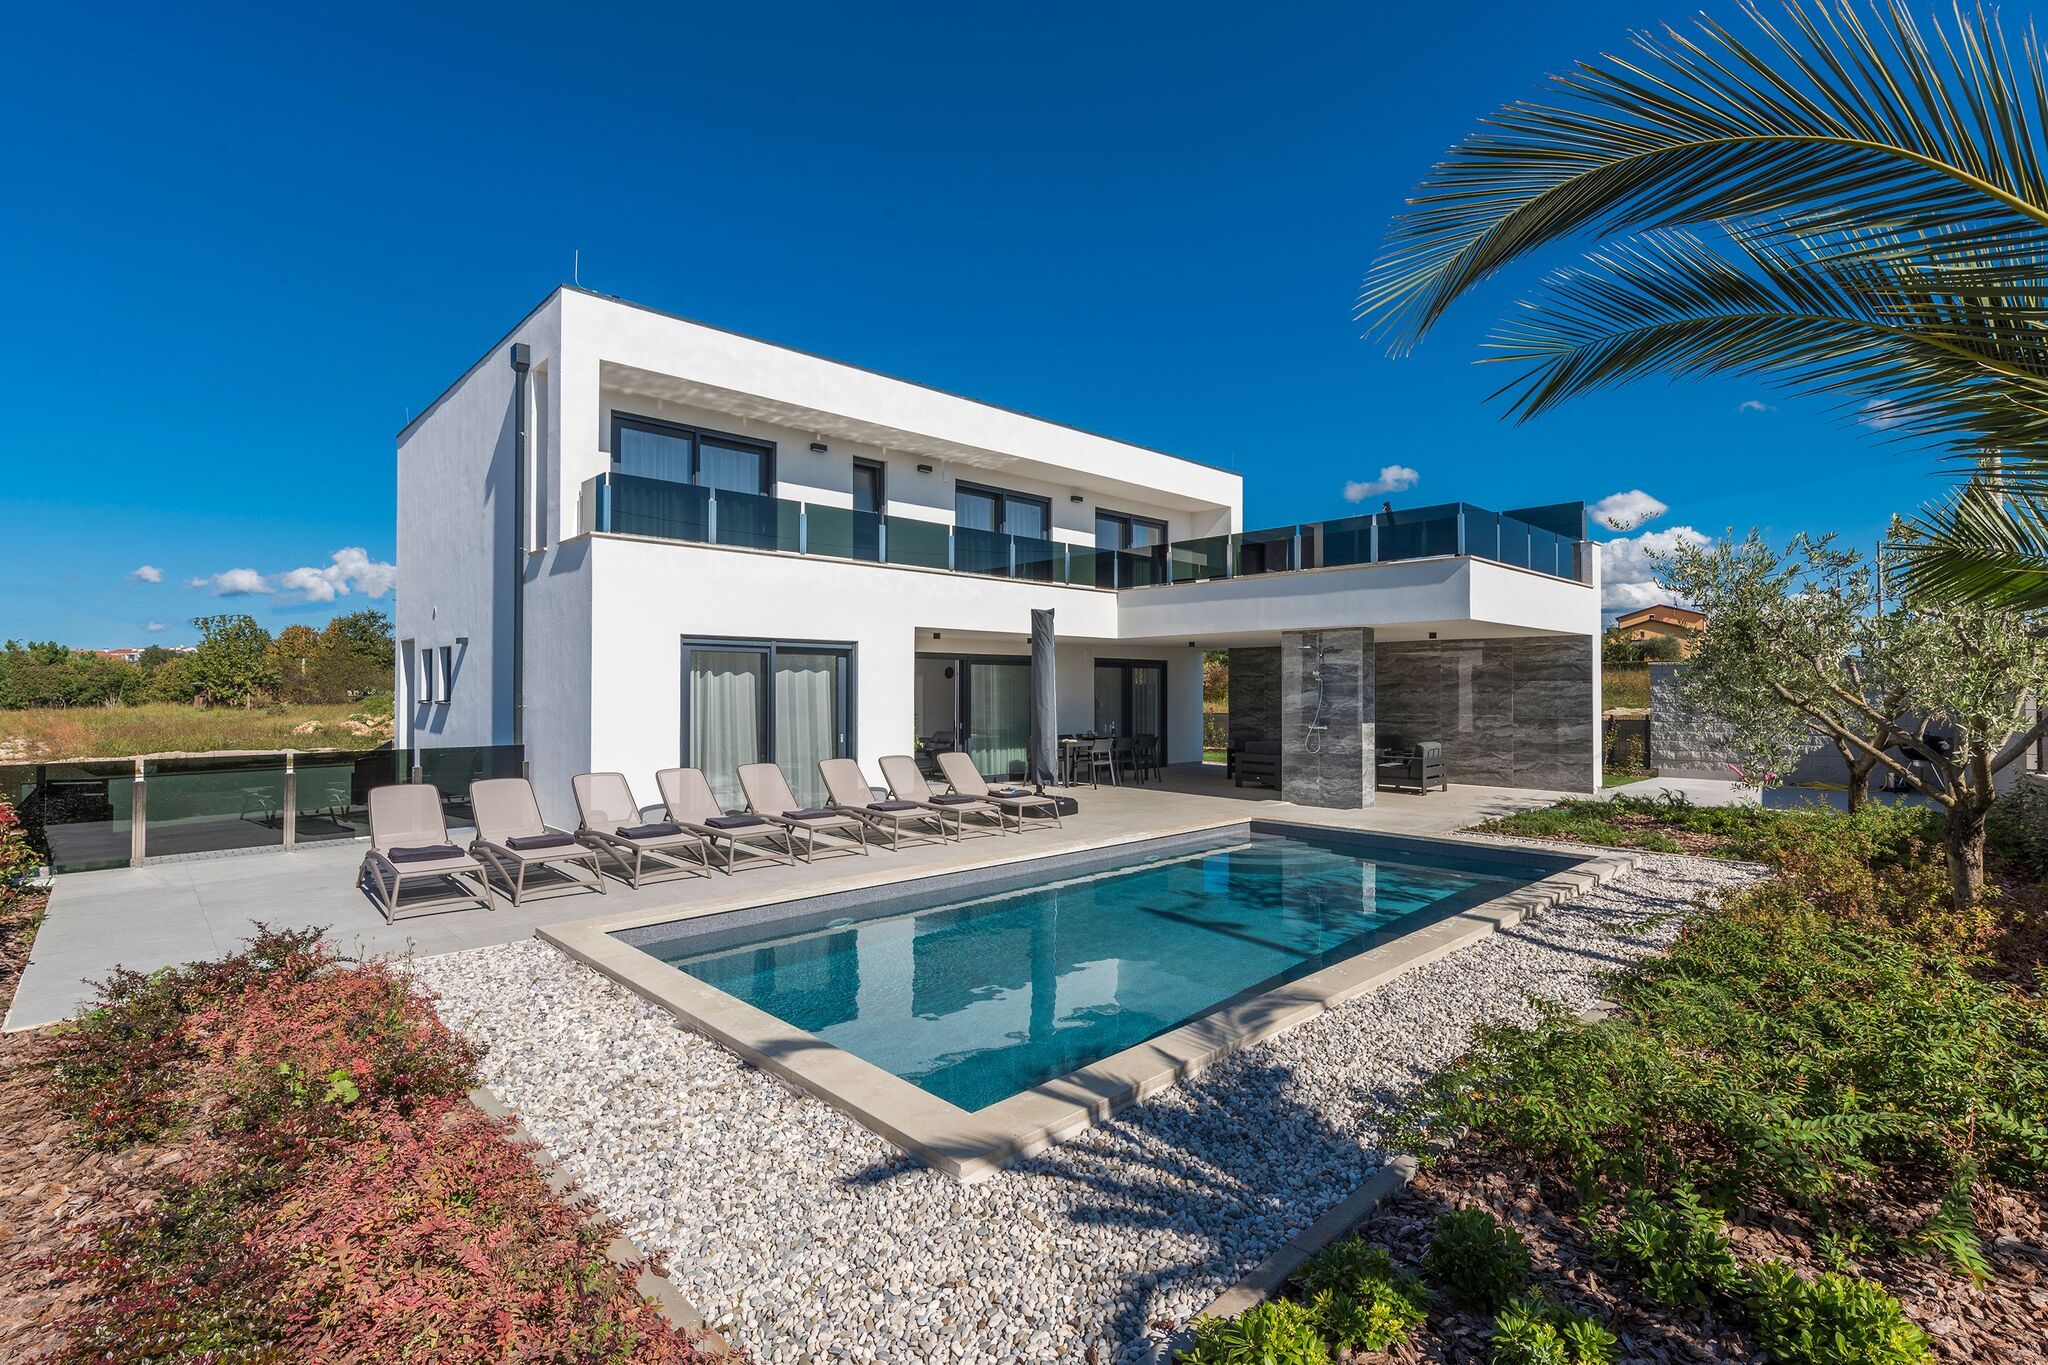 Moderne villa op slechts 2 km van de Istrische stad Novigrad met prive zwembad